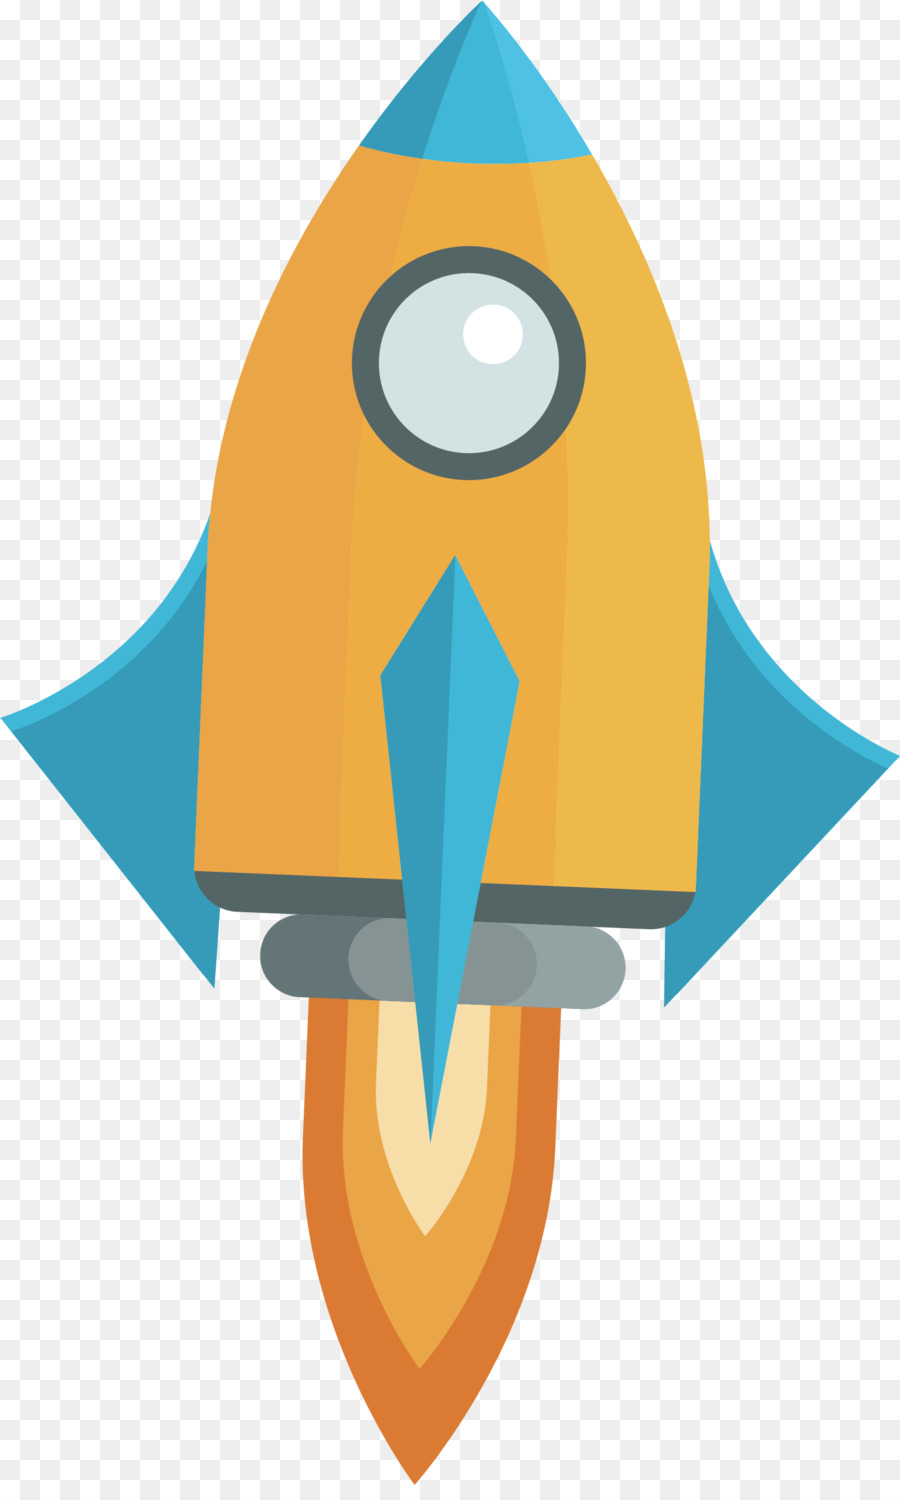 Rocket Flight Clip-art - Eine Rakete, die fliegt nach oben